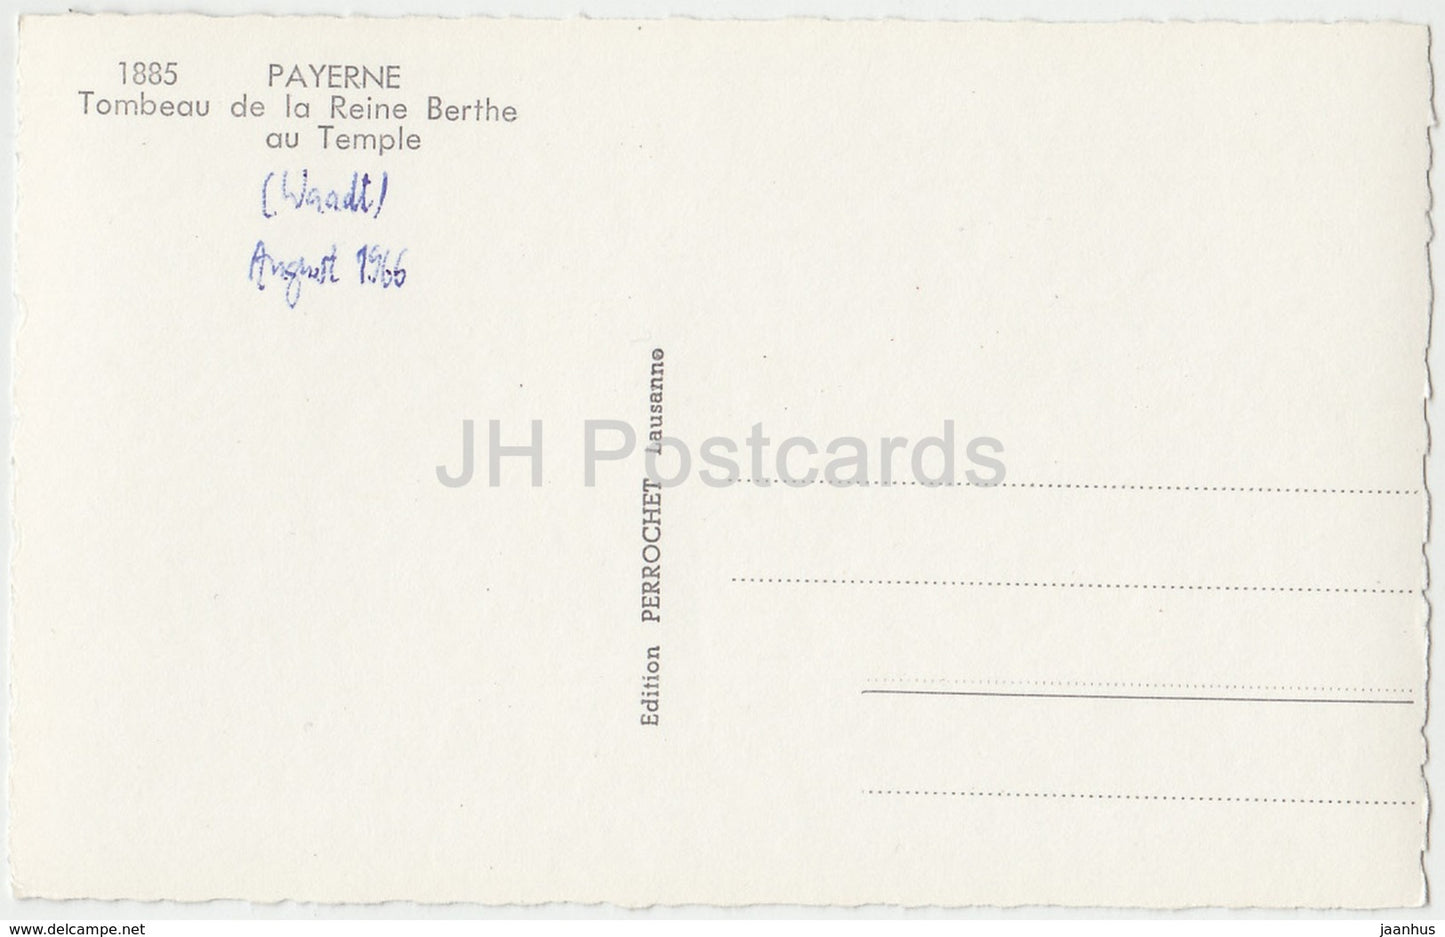 Payerne - Tombeau de la Reine Berthe au Temple - 1885 - Suisse - 1966 - cartes postales anciennes - occasion